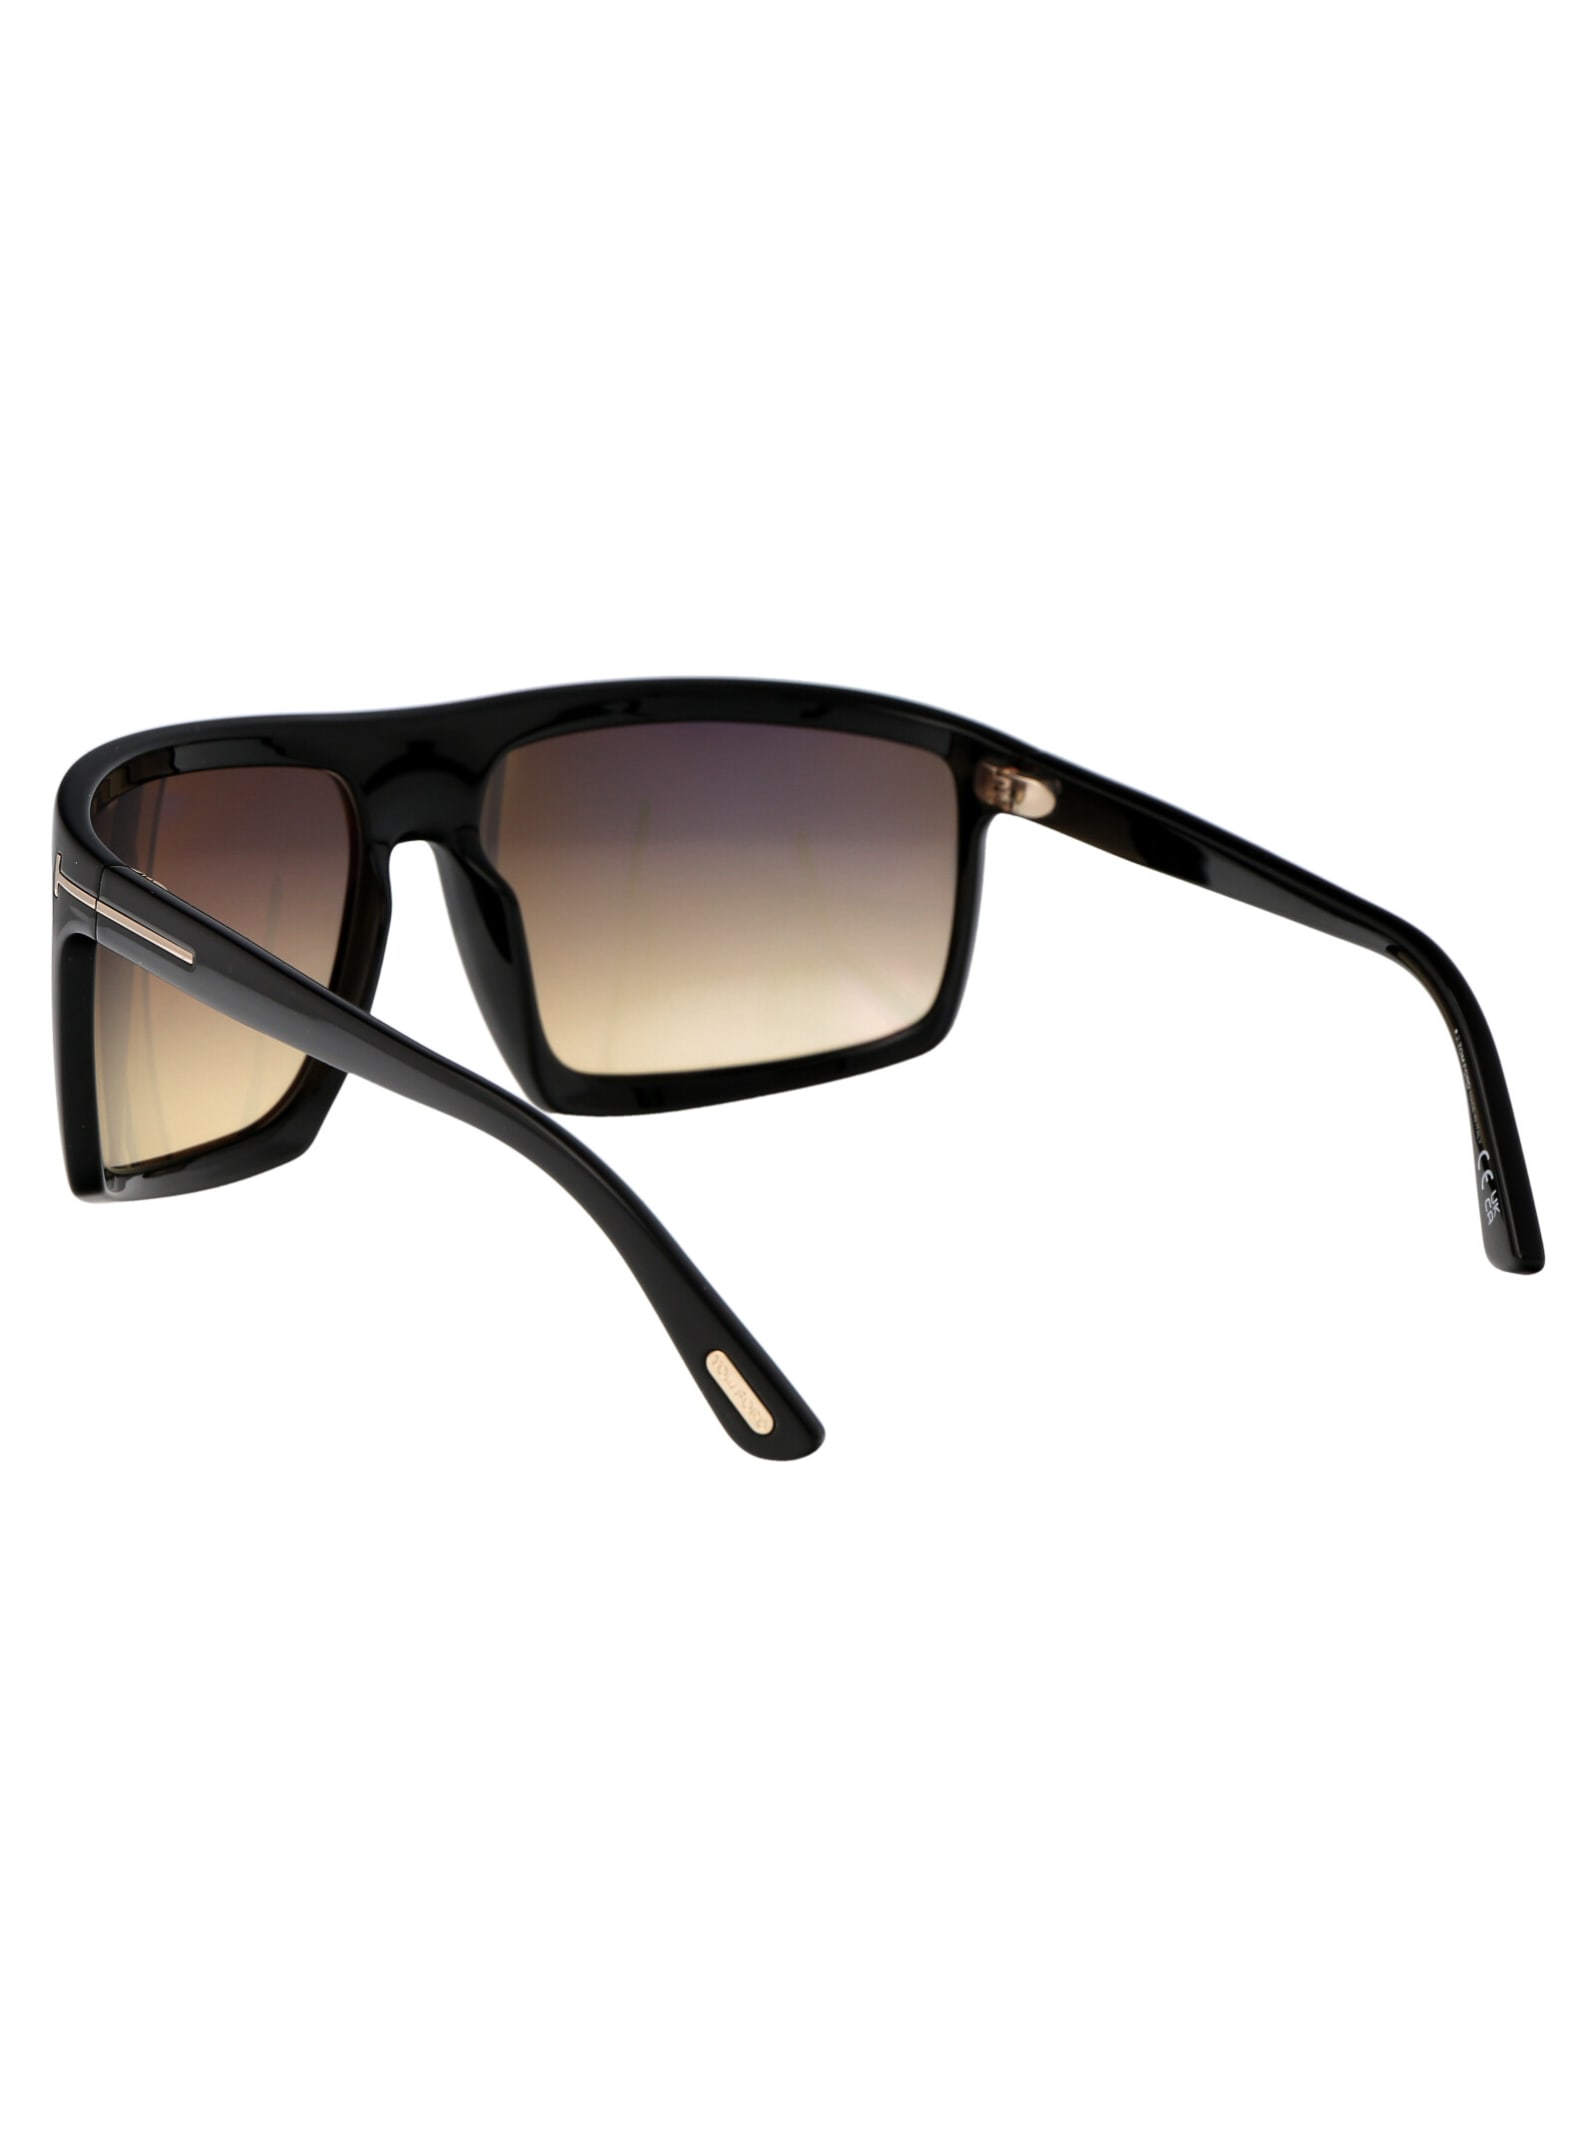 Shop Tom Ford Clint-02 Sunglasses In 01b Nero Lucido / Fumo Grad